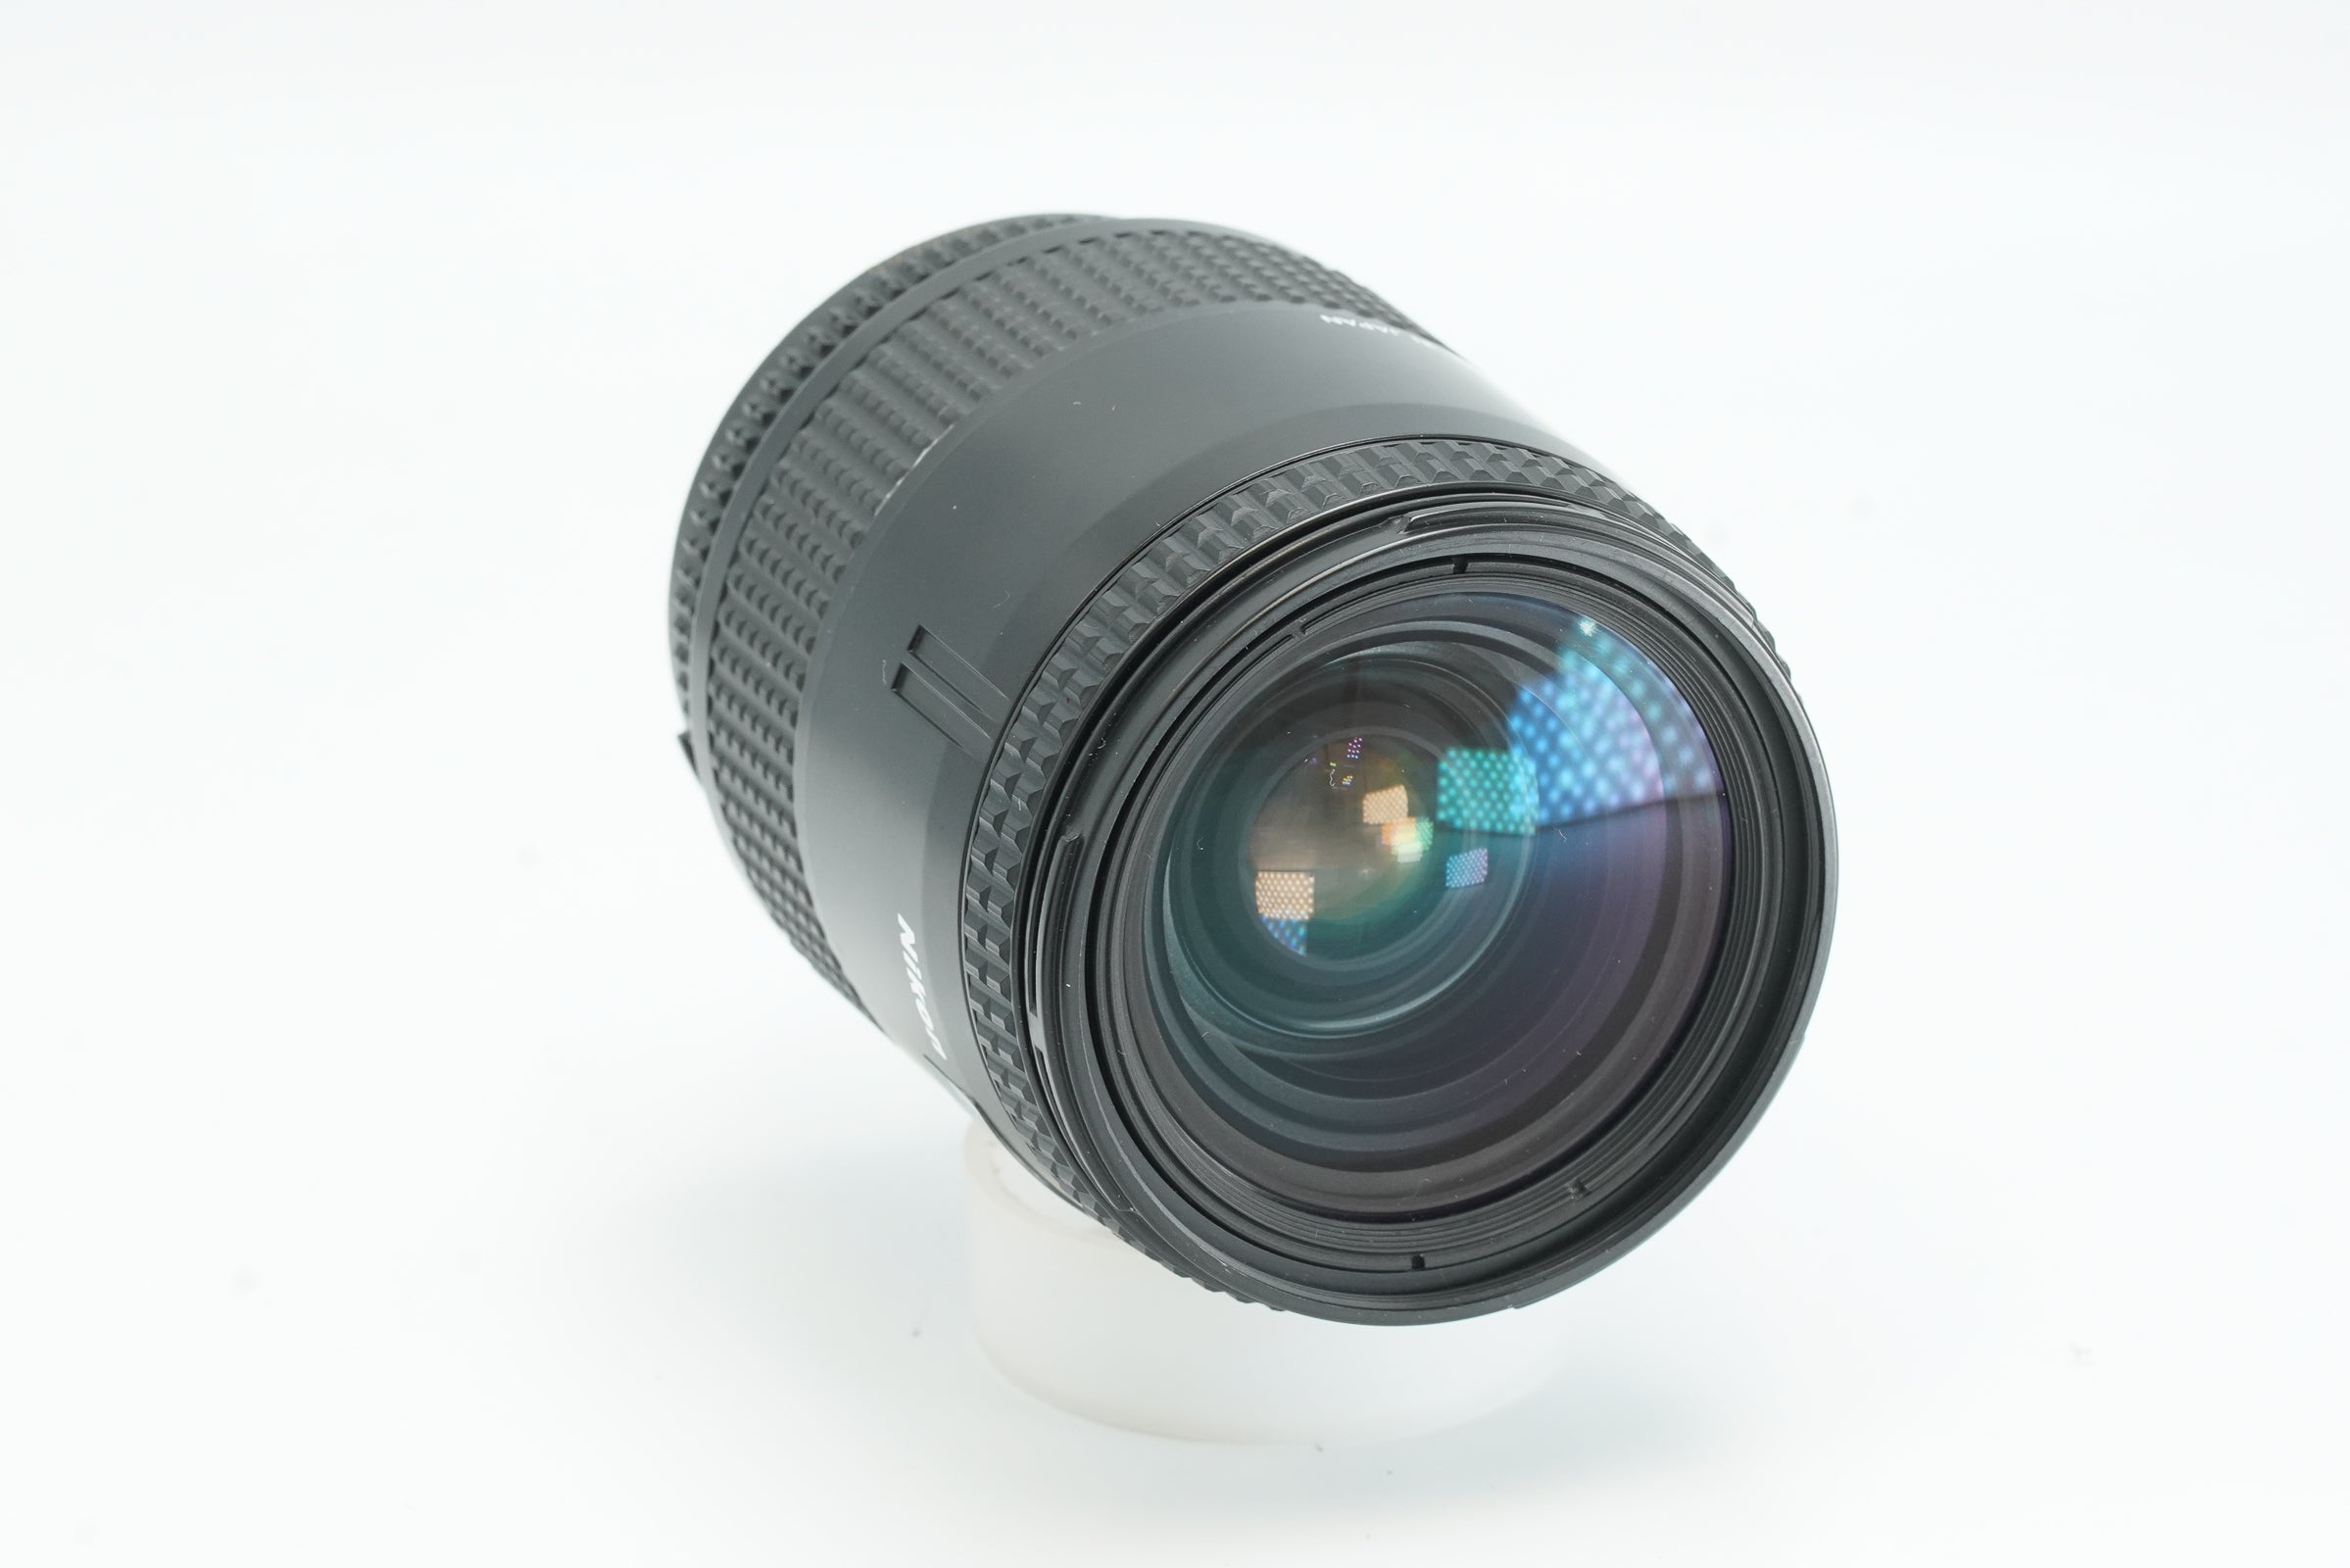 Nikon / Nikkor AF 28-85mm f3.5-4.5 autofocus zoom